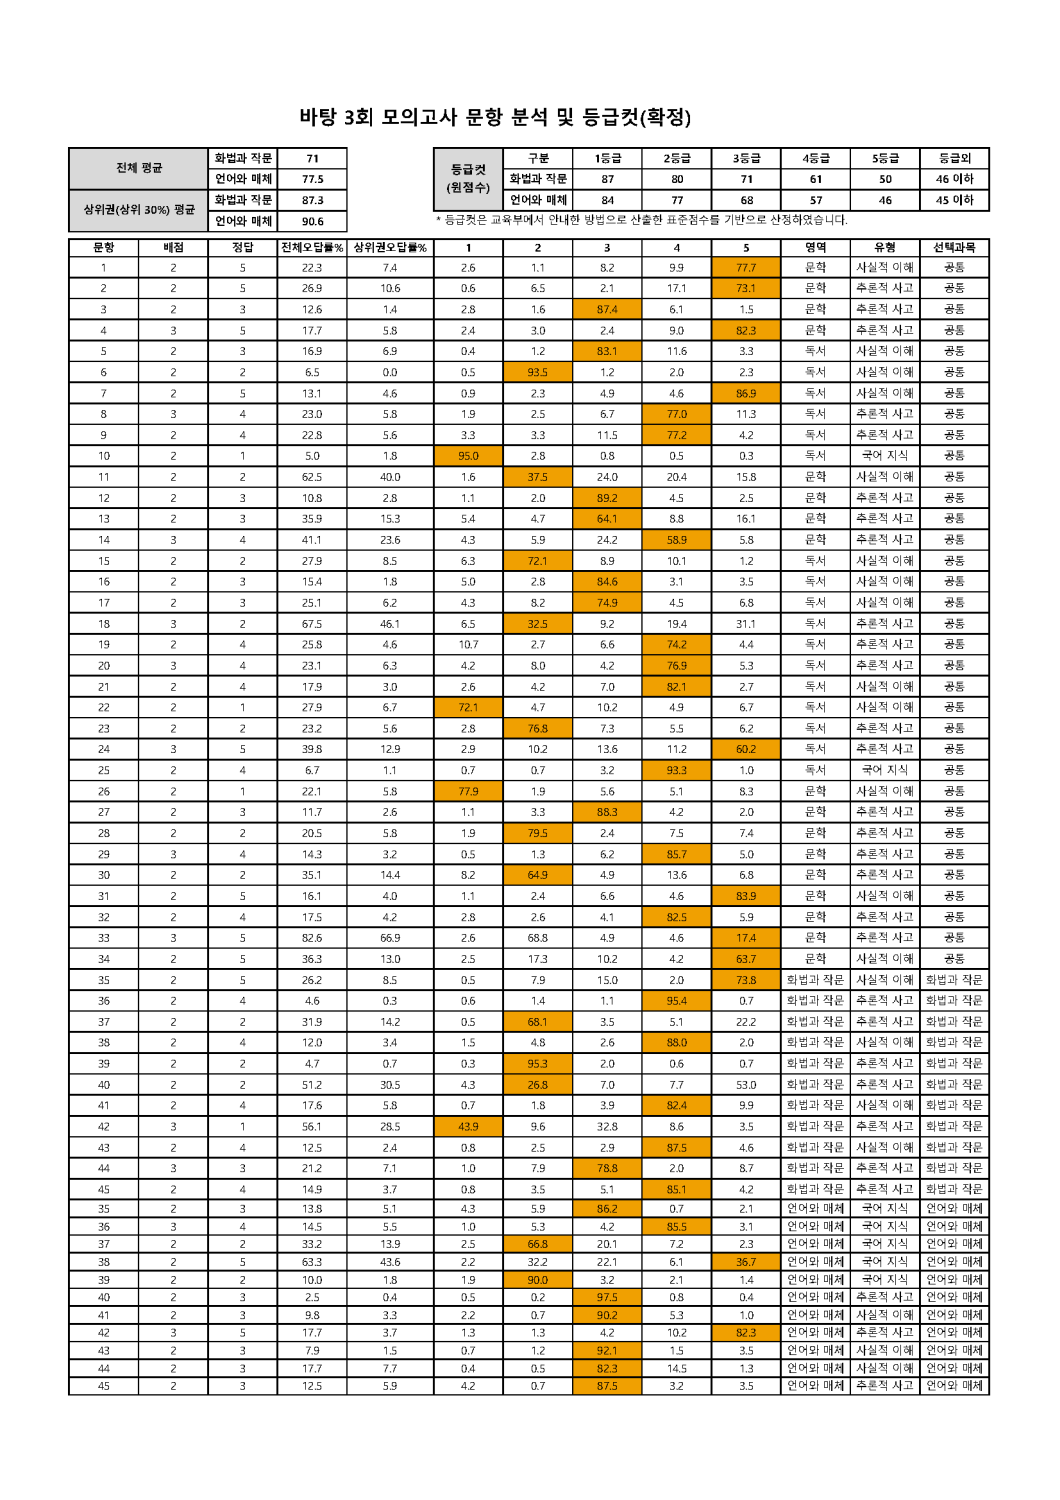 2022학년도 바탕 문항분석표 및 등급컷(1회~10회)_페이지_03.png